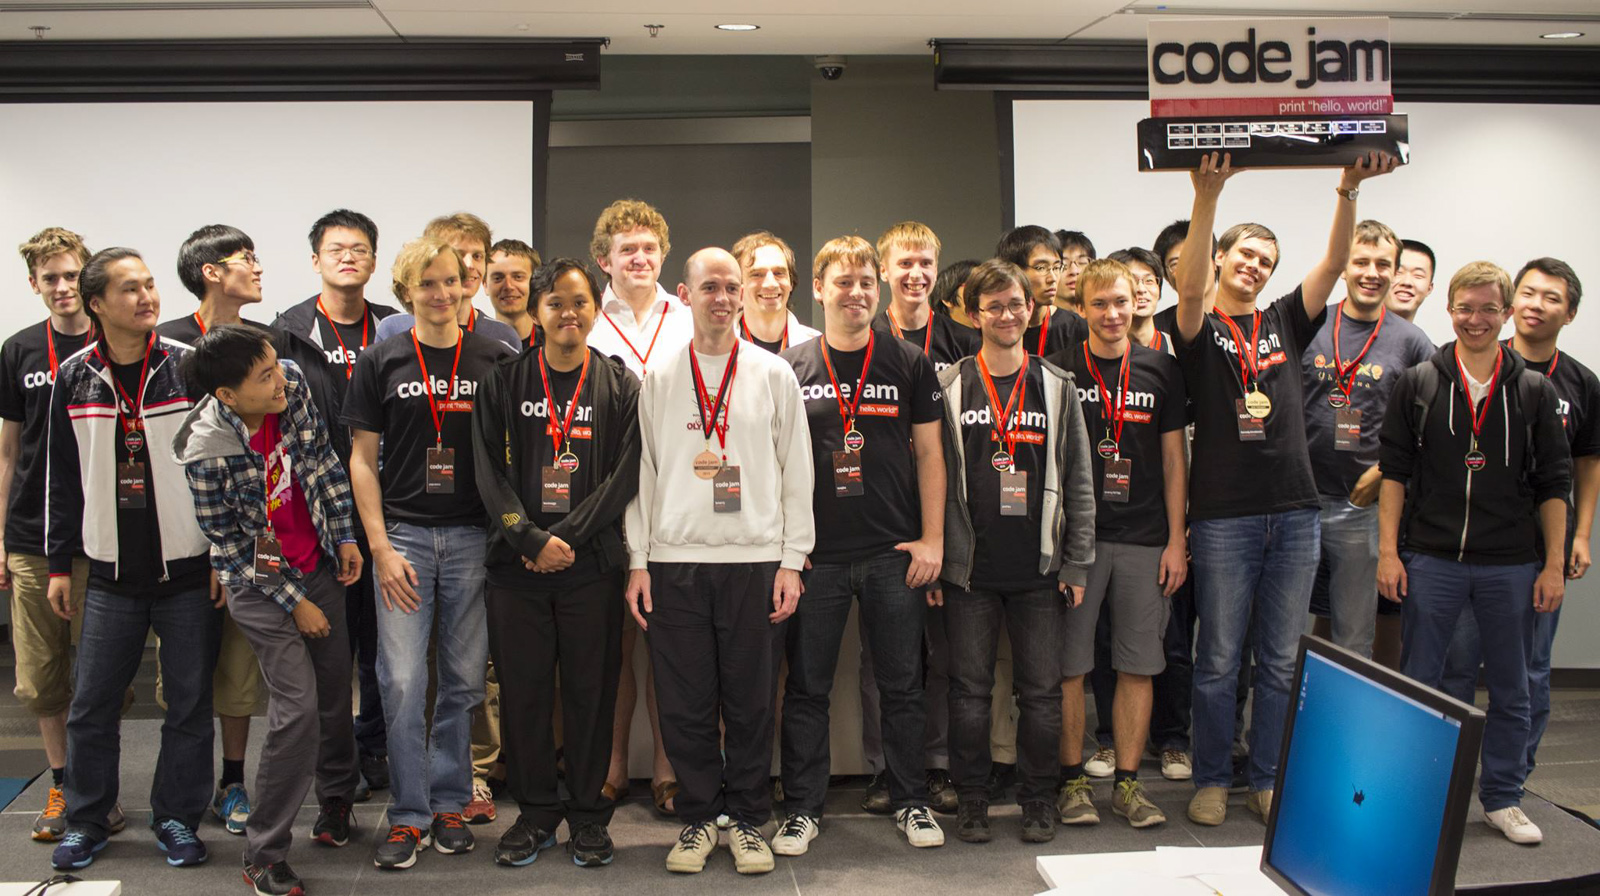 Геннадий Короткевич подтвердил звание чемпиона Google Code Jam во второй раз. Фото: https://www.facebook.com/googlecodejam